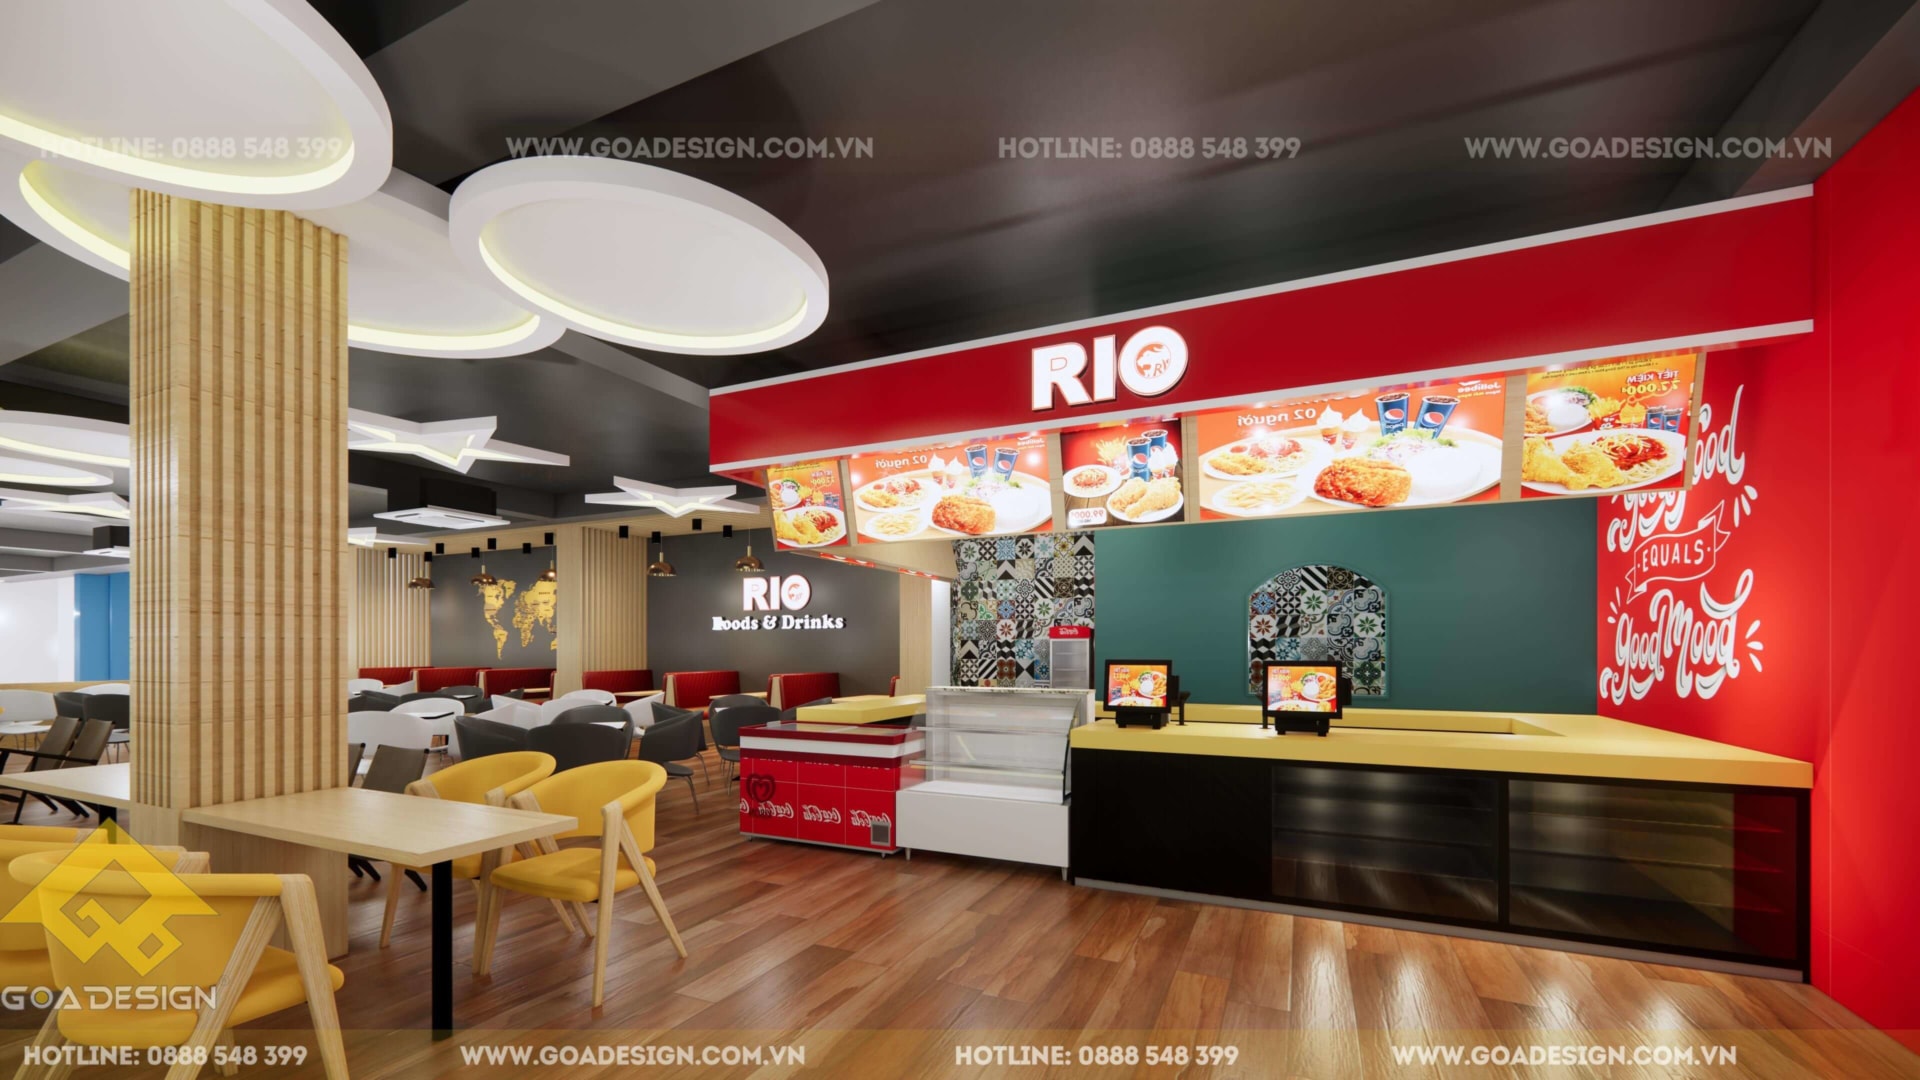 GOADESIGN Tư vấn thiết kế thi công Food & Drink Rio (1)